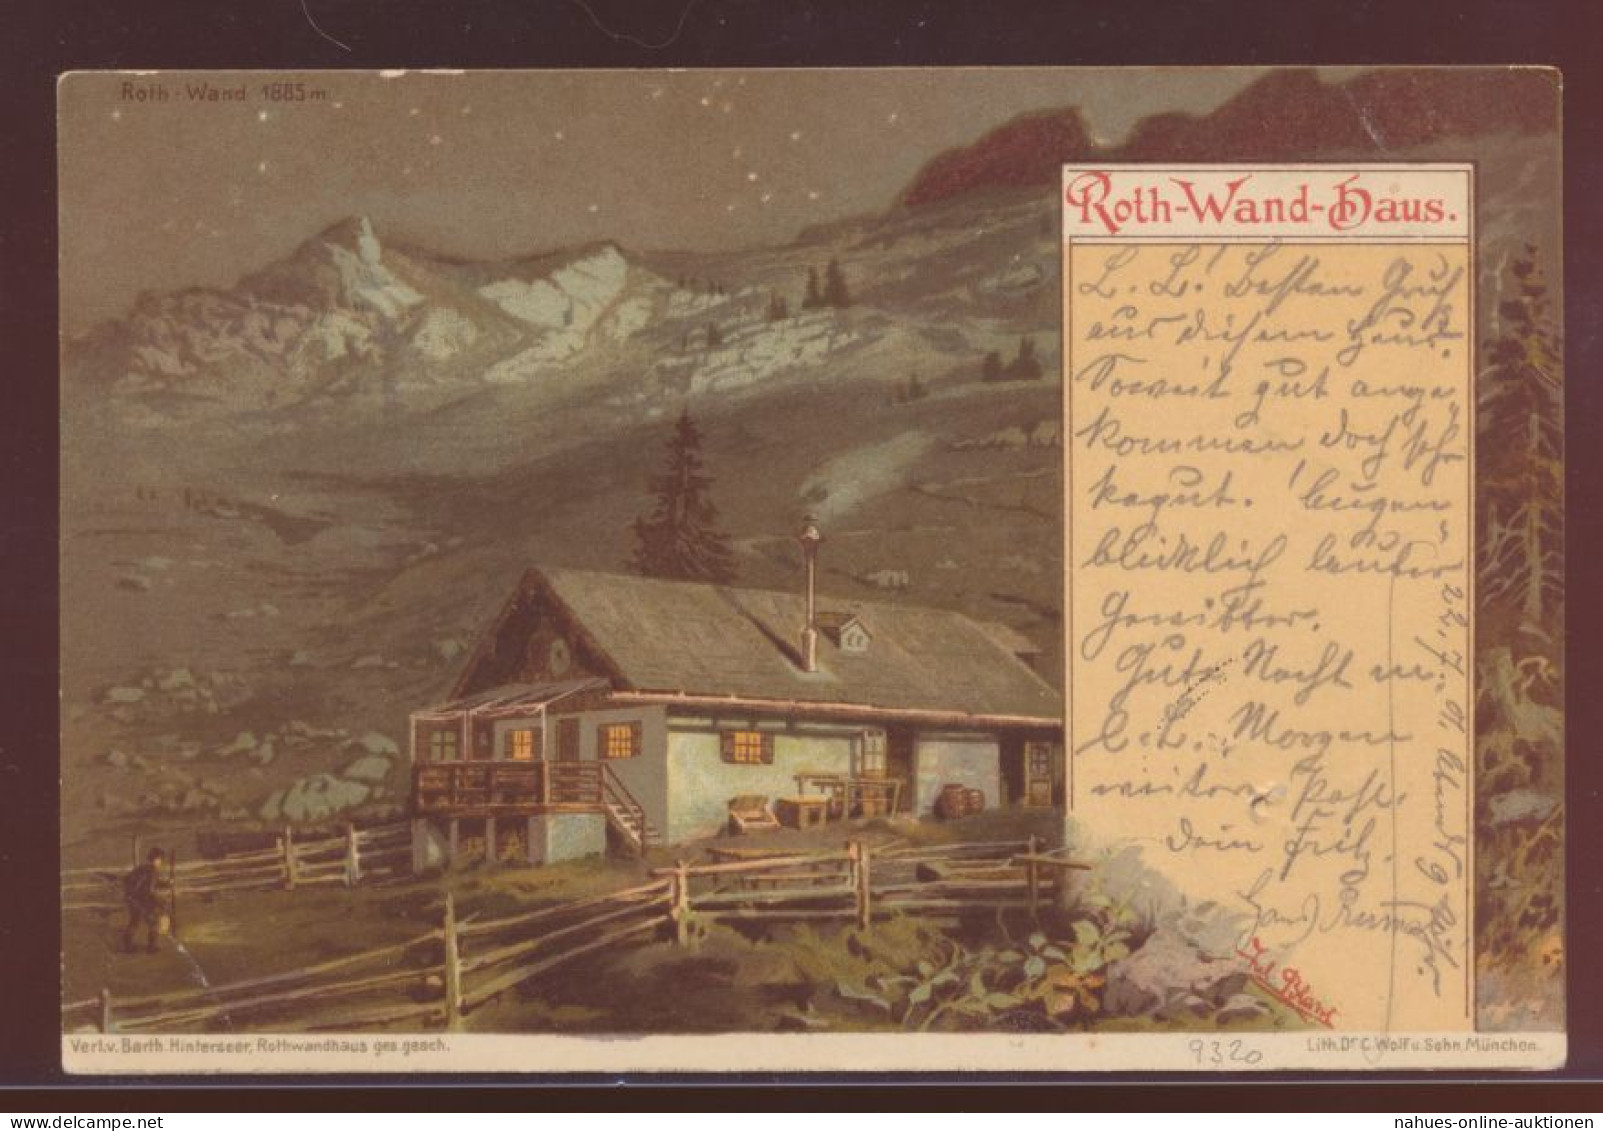 Bayern Künstler Ansichtskarte Posthilstelle Rothwandhaus Nach München 1901 - Ganzsachen